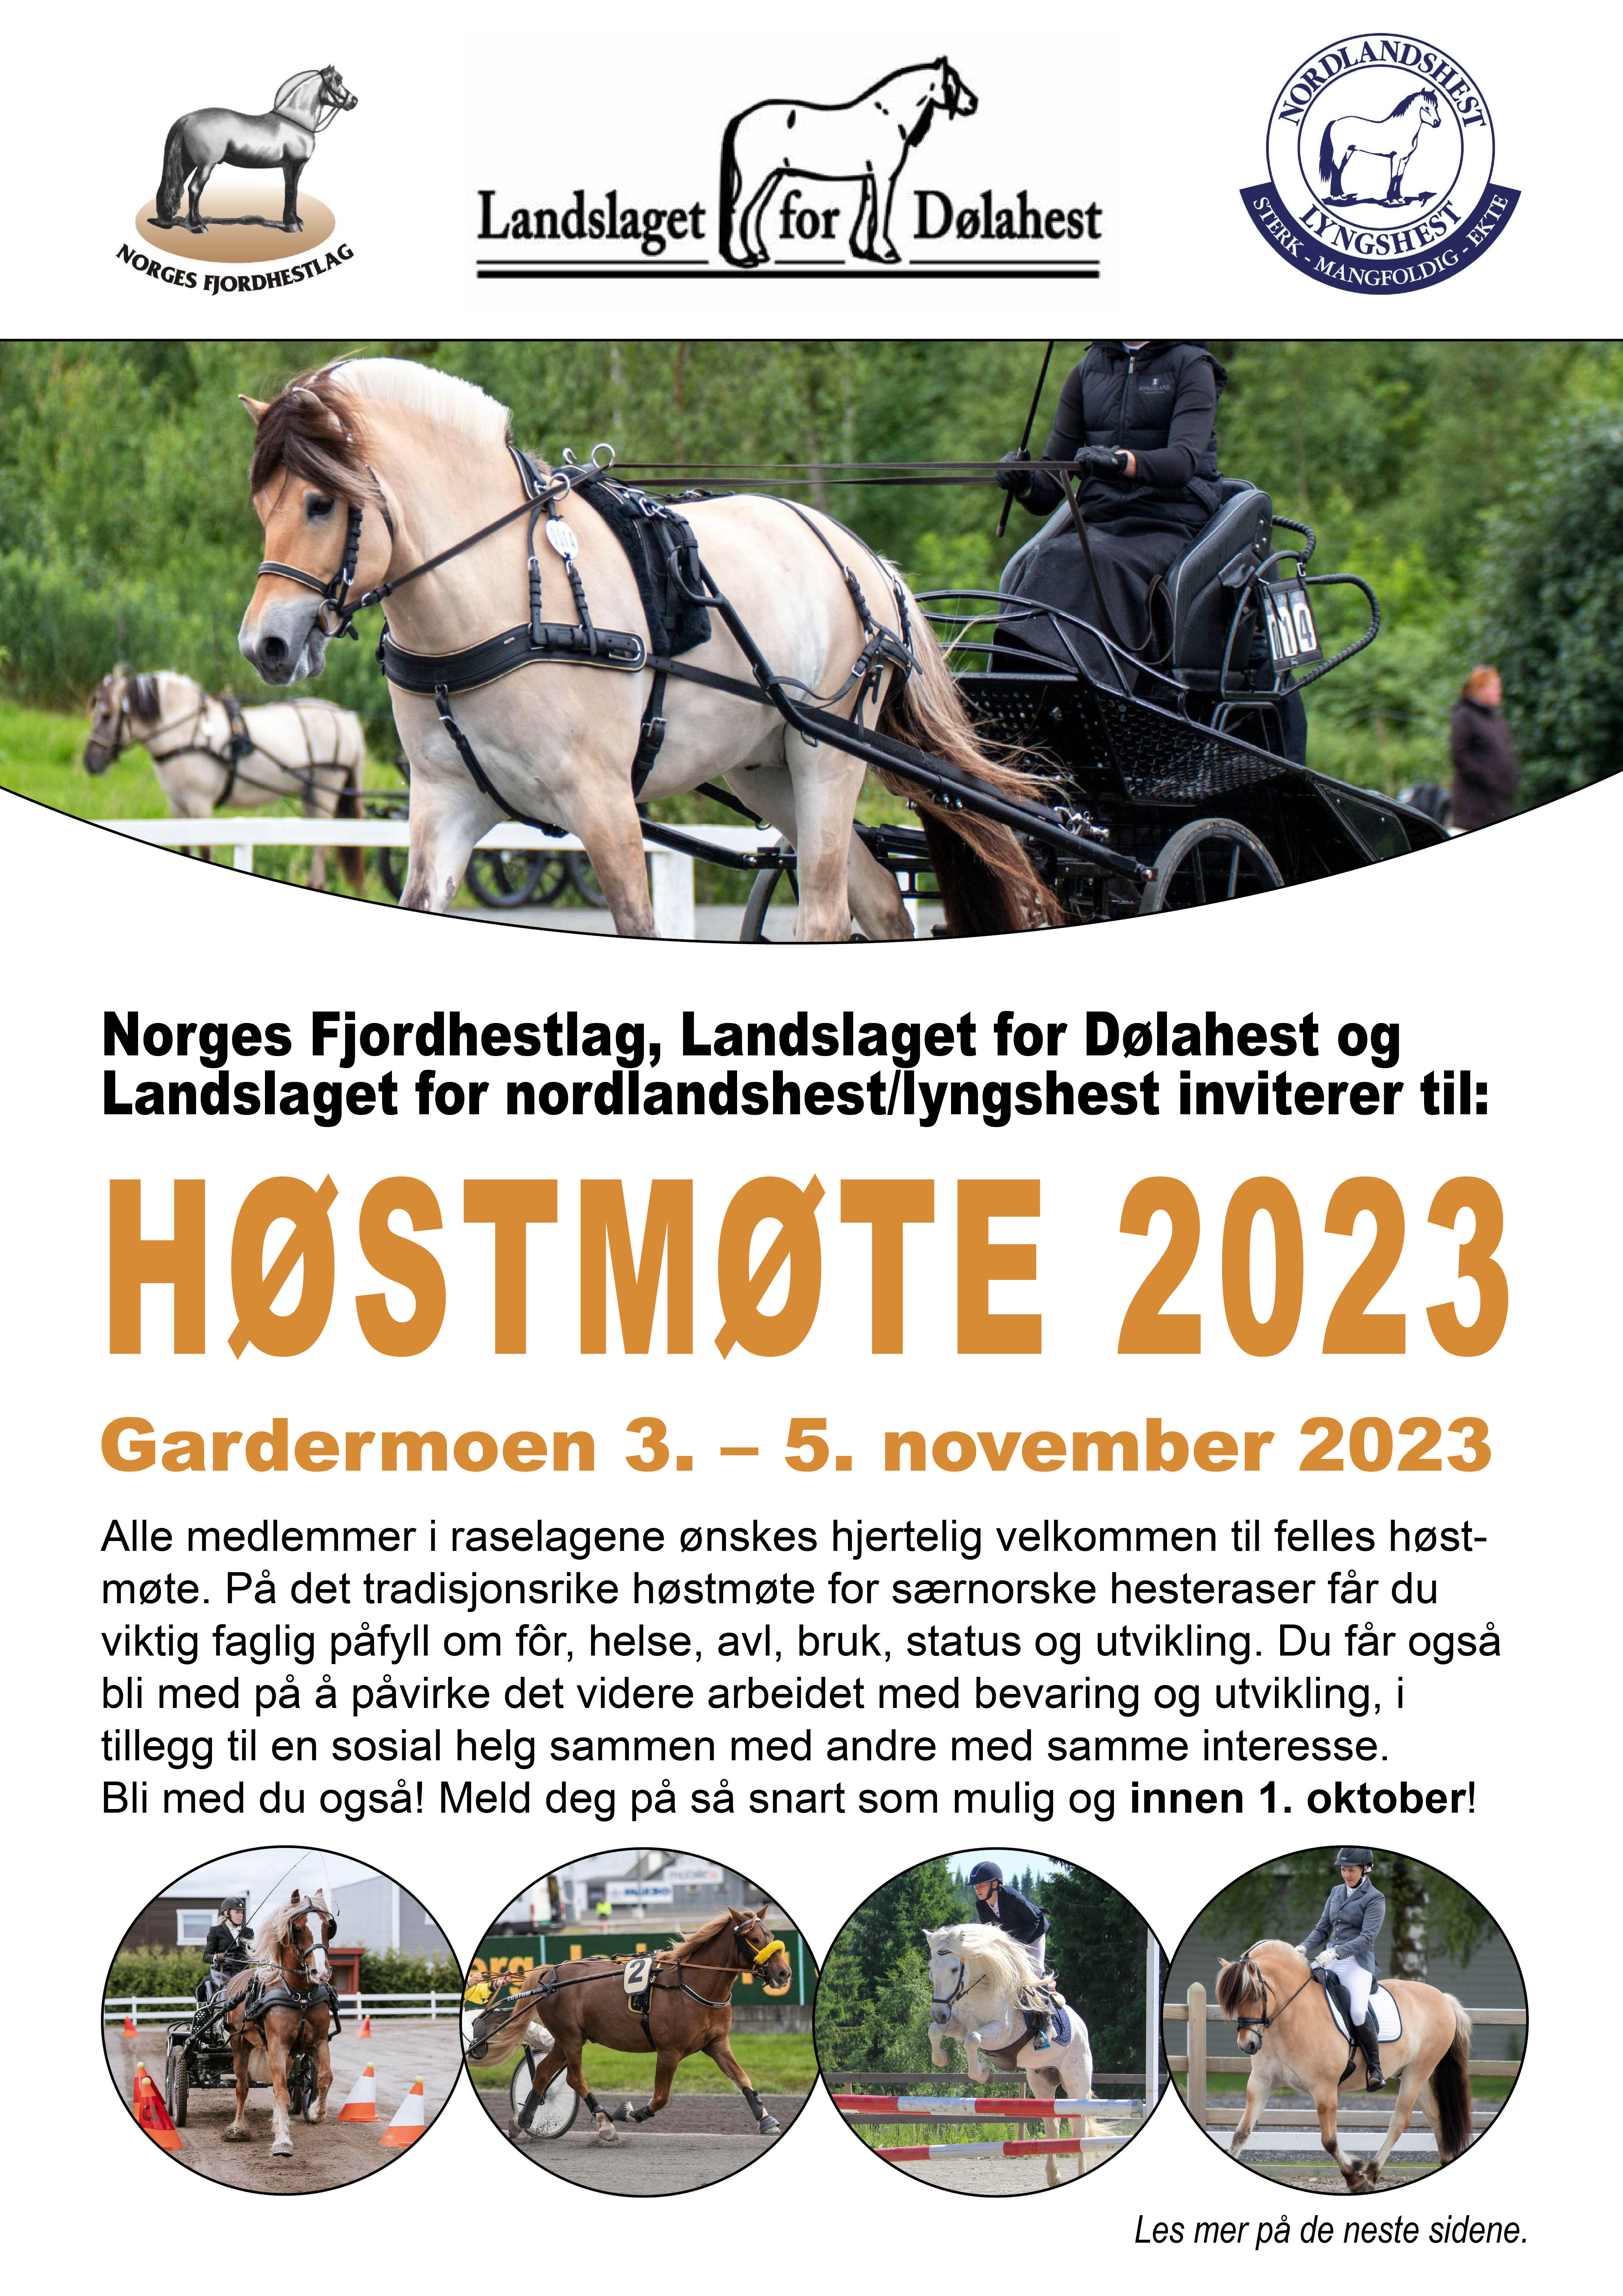 HØSTMØTE 2023 - invitasjon og prgram - BILDE1